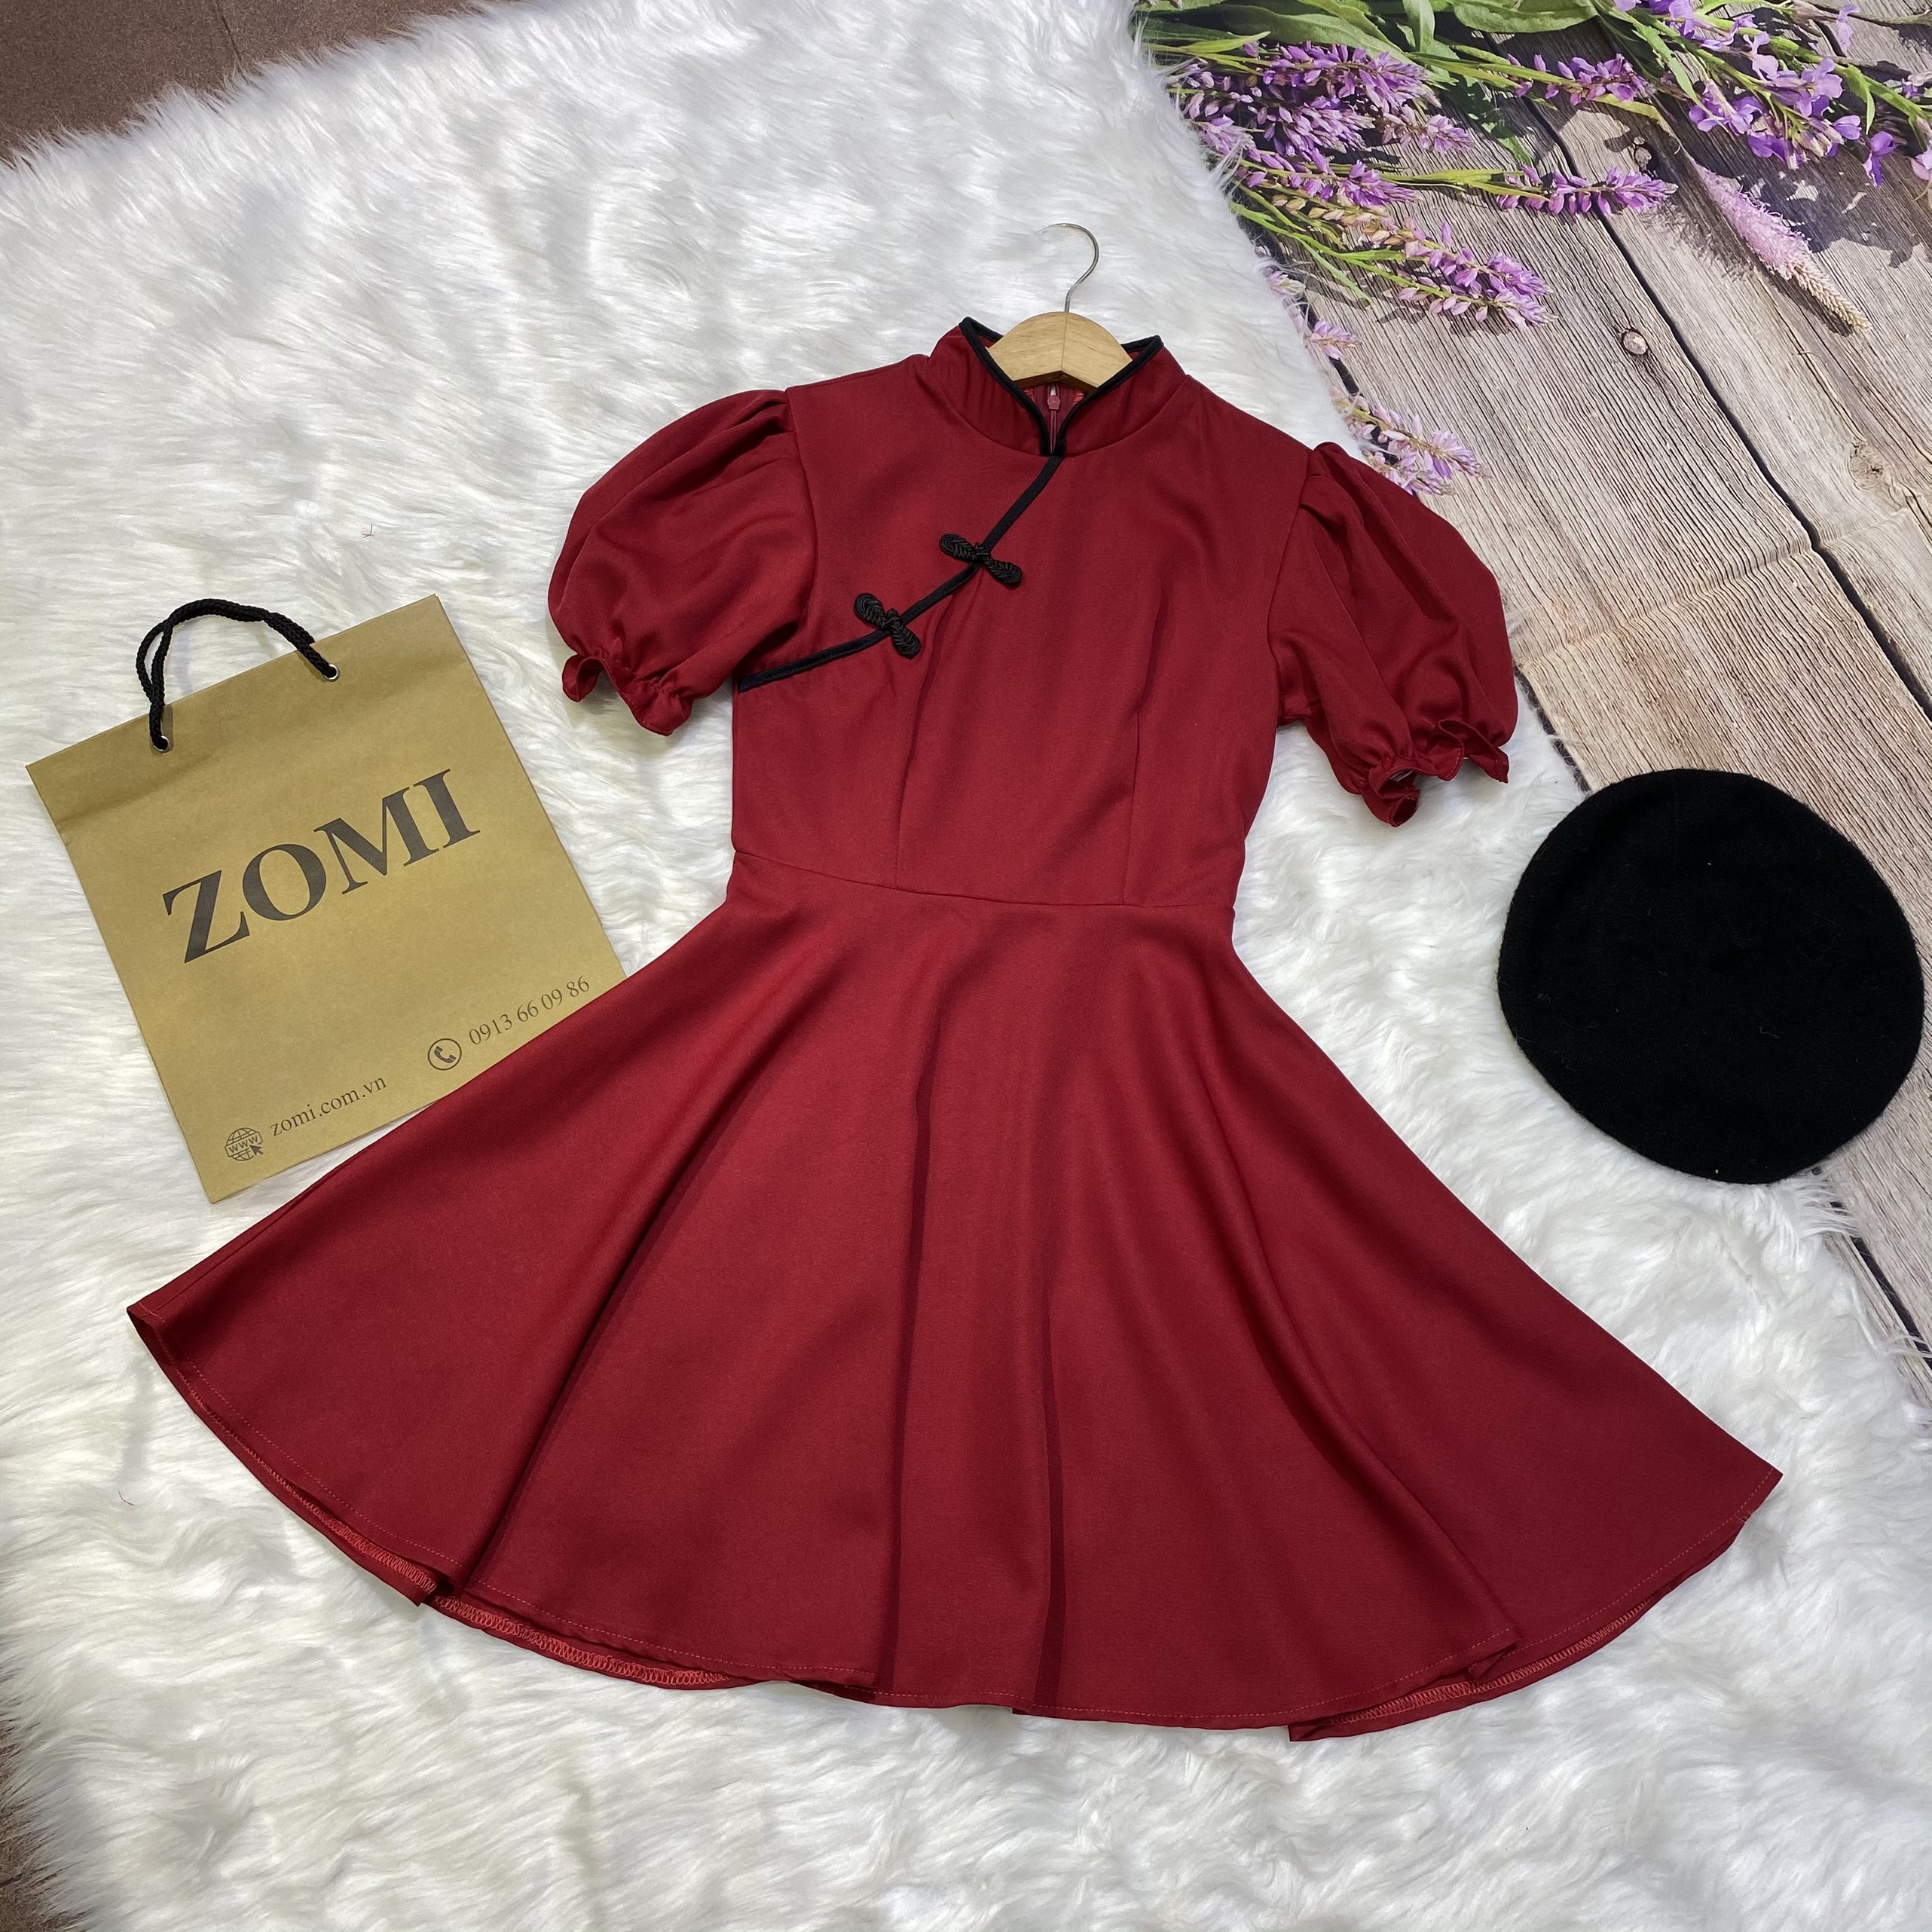 Đầm đỏ dáng xòe kiểu sườn xám hiện đại thiết kế ZOMI 